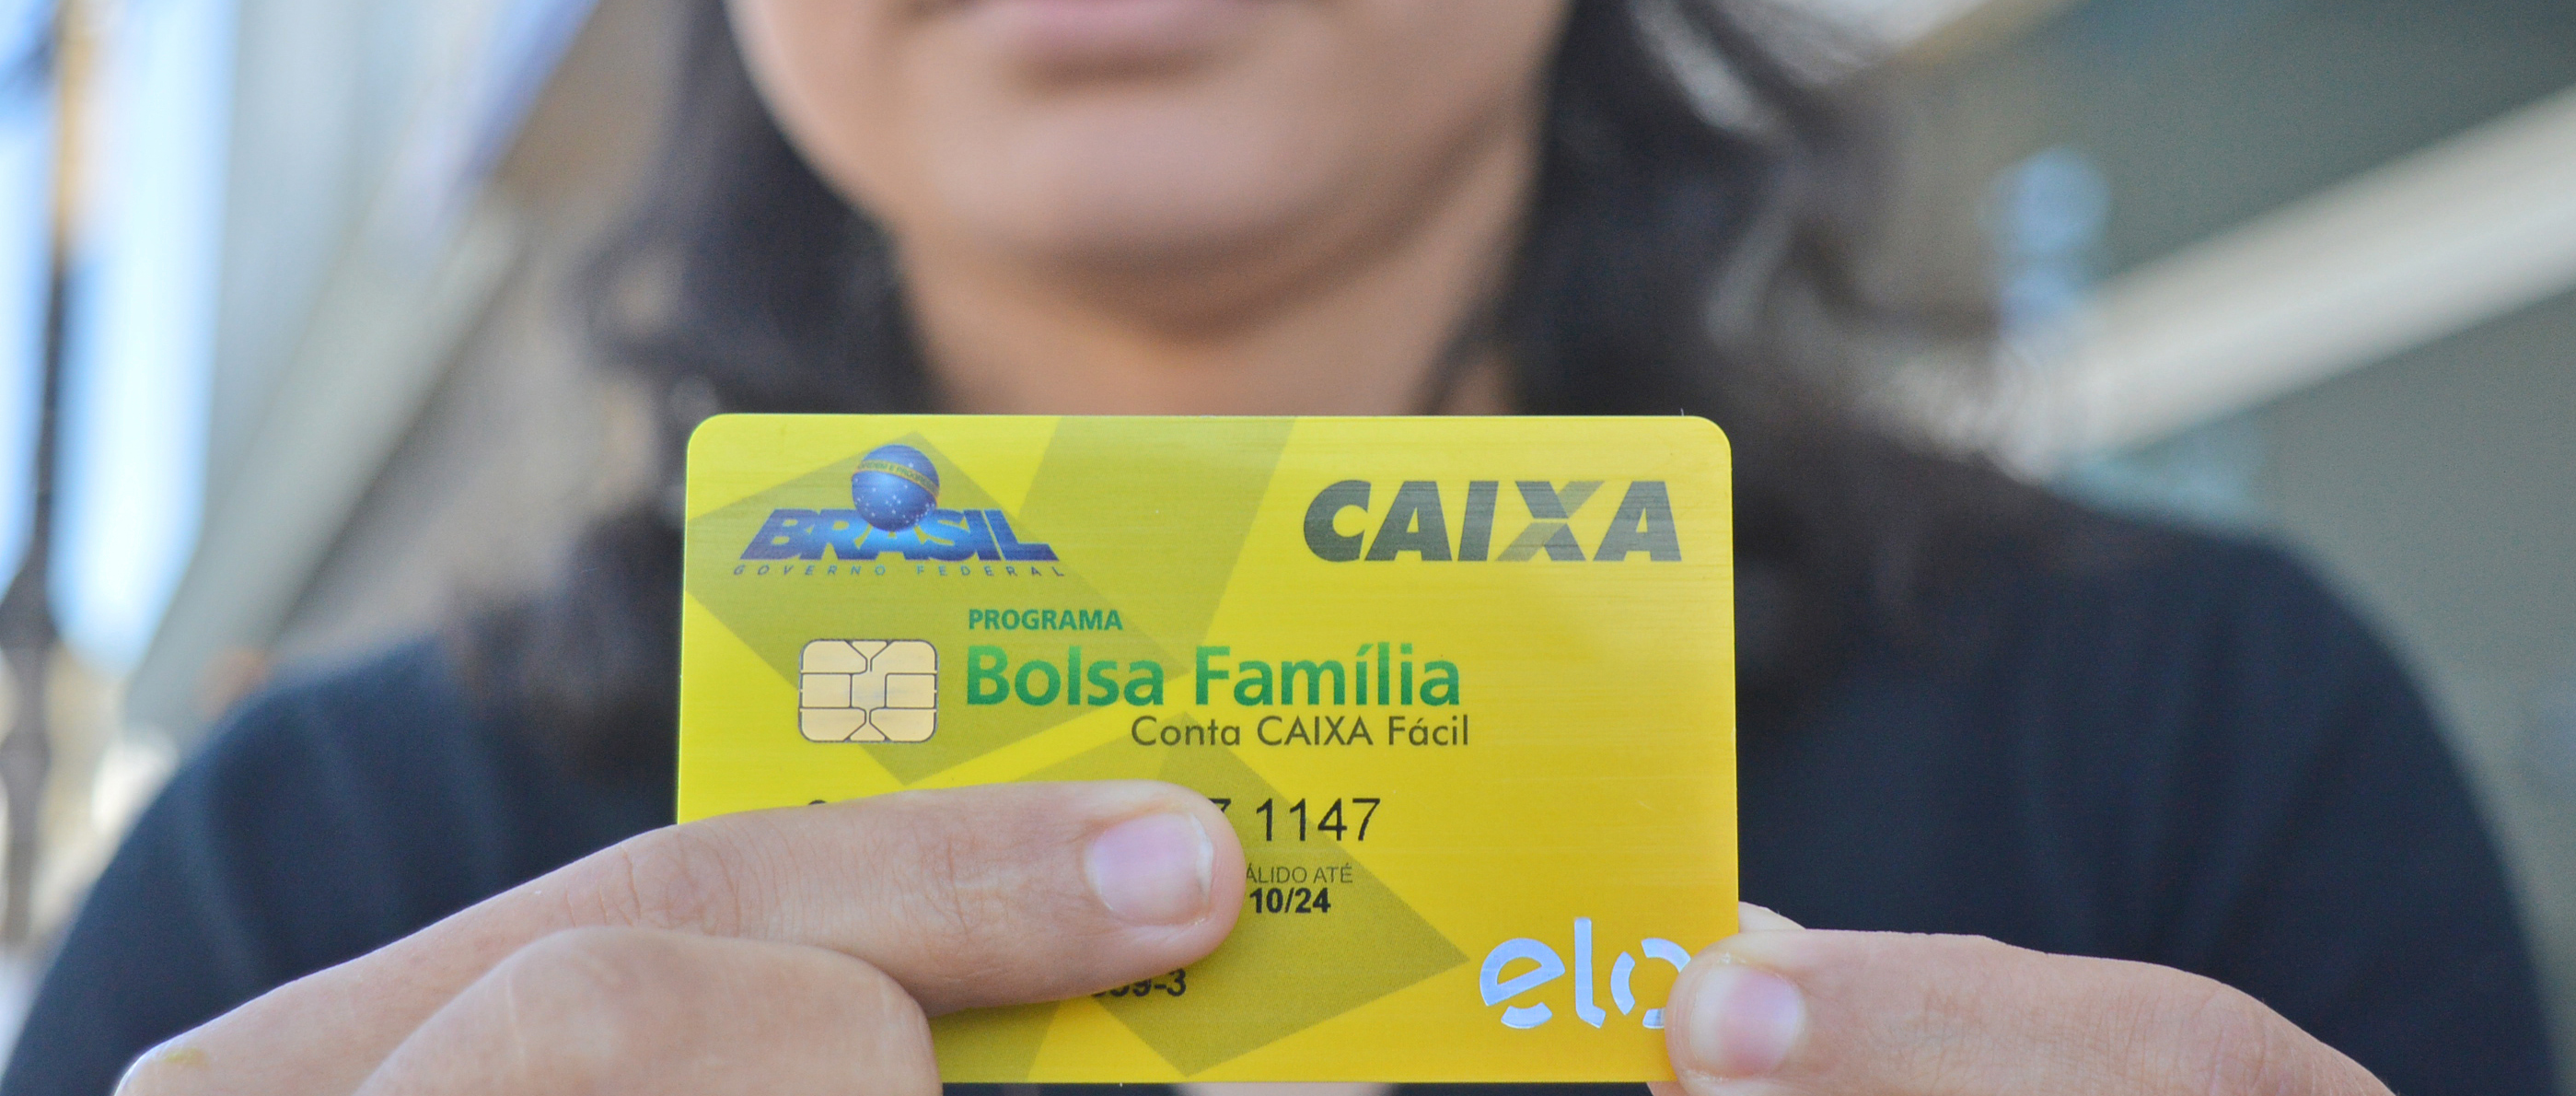 Bolsa Família realiza pagamentos de R$ 2,5 bilhões neste mês - Diário